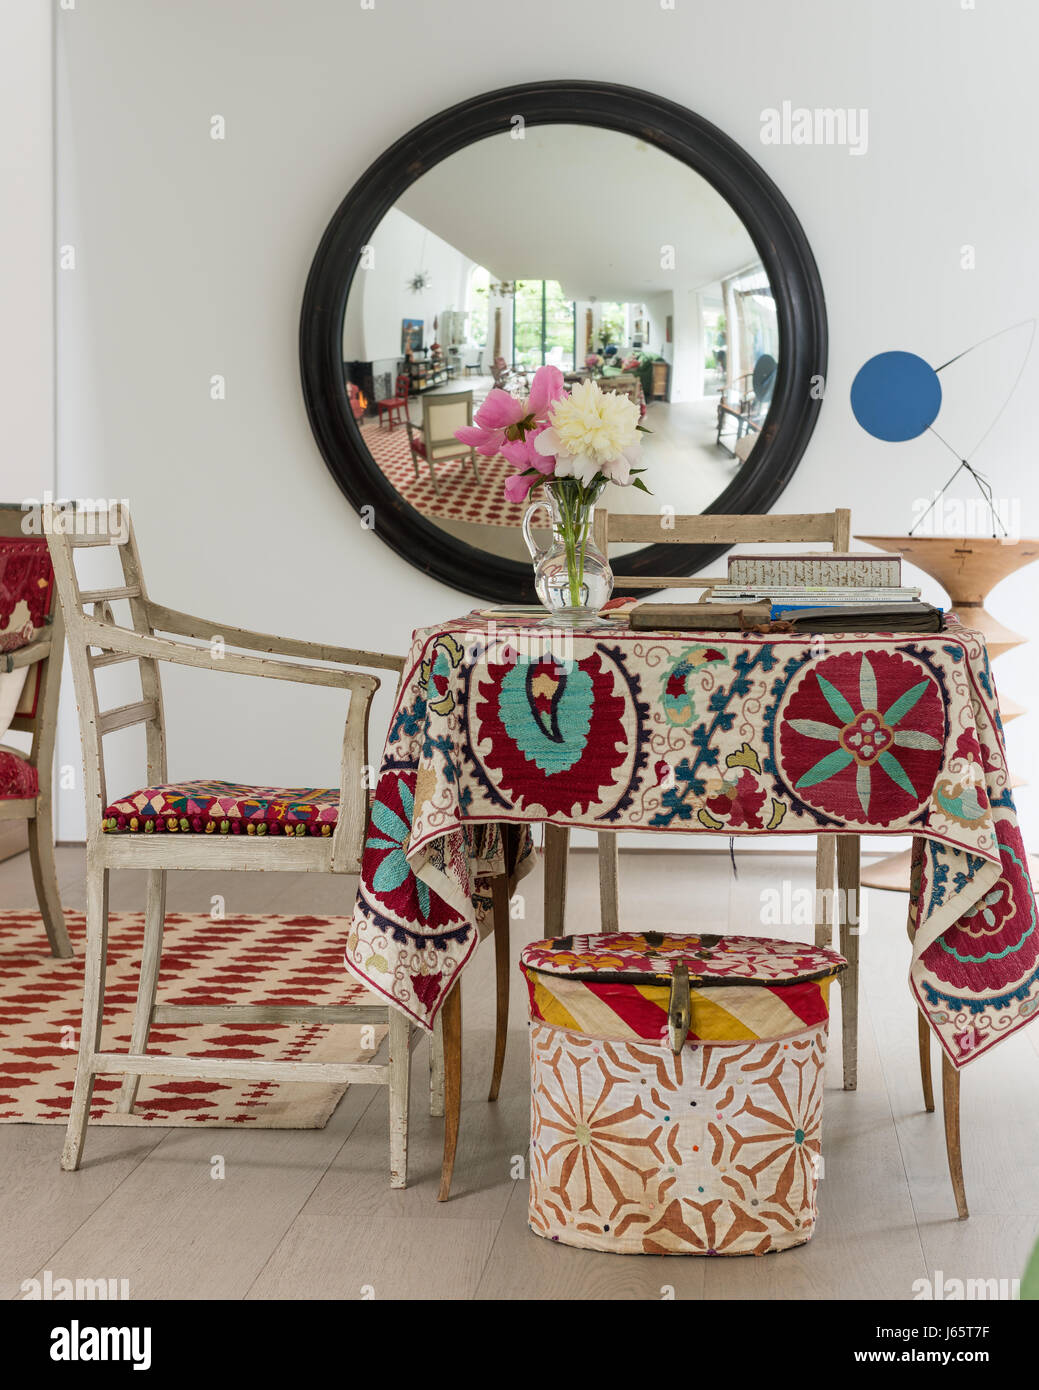 Grand miroir convexe avec de vieux textiles ajoutant de la couleur Banque D'Images